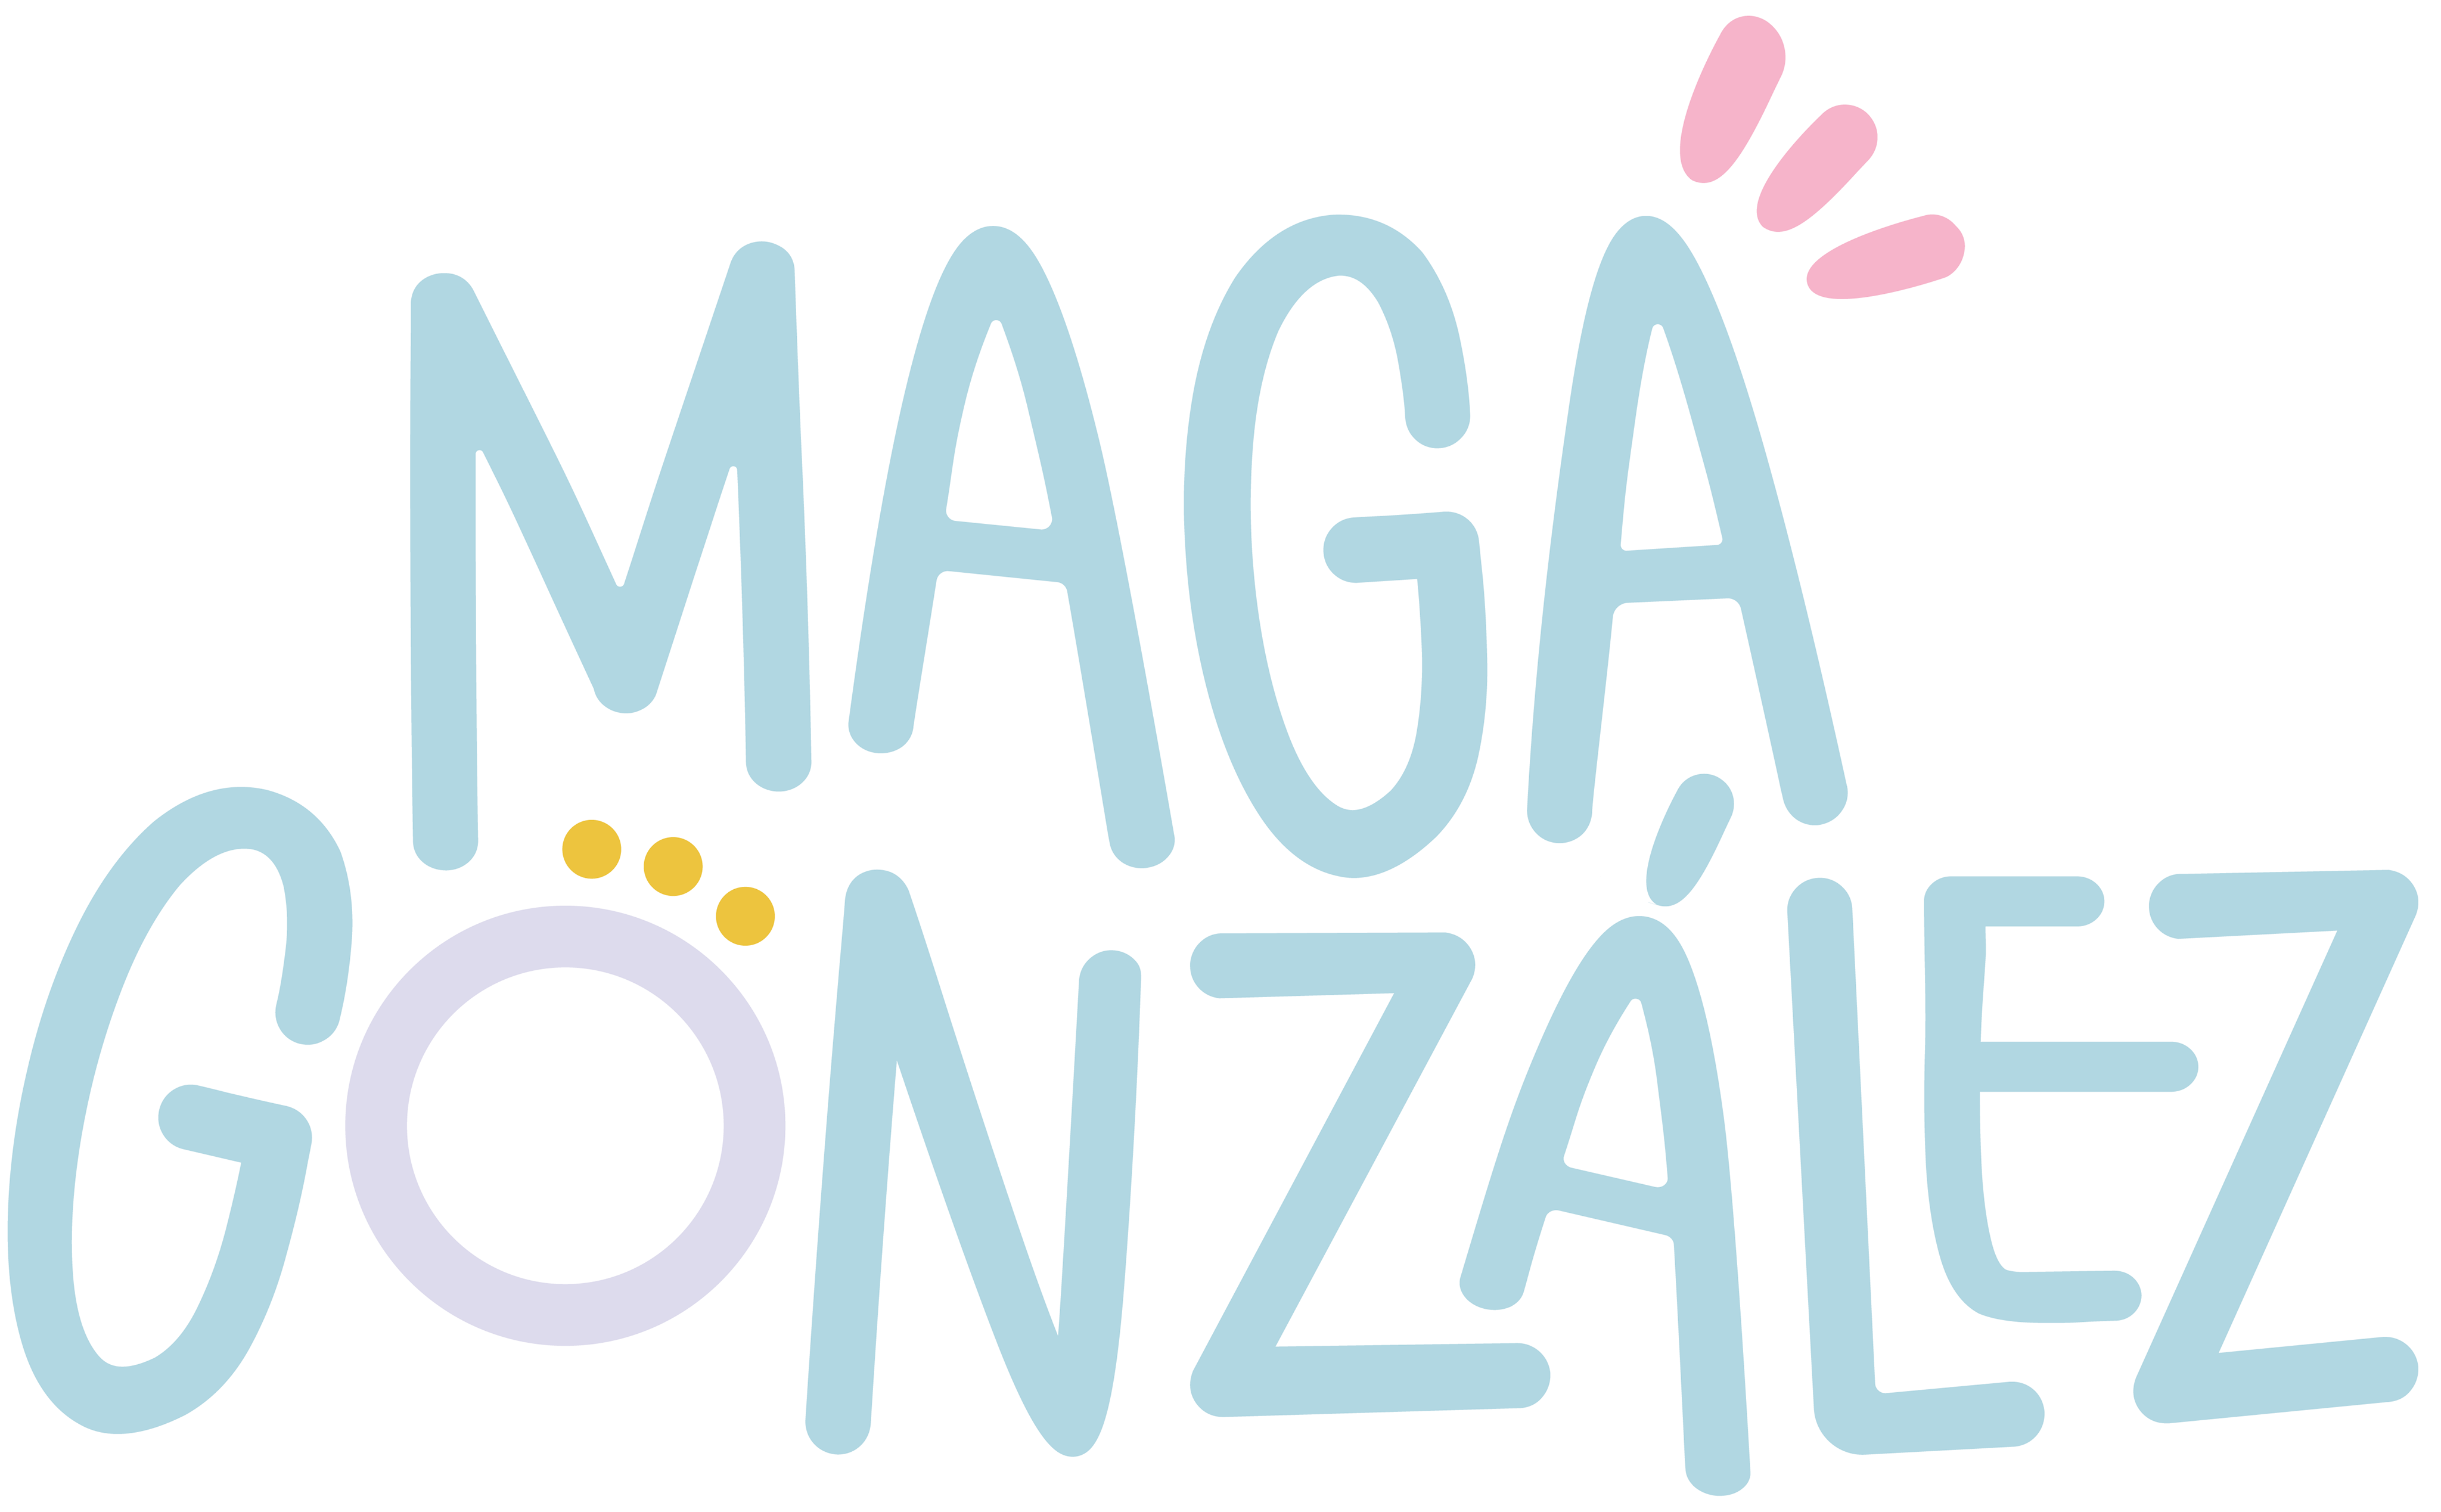 Maga Gonzalez